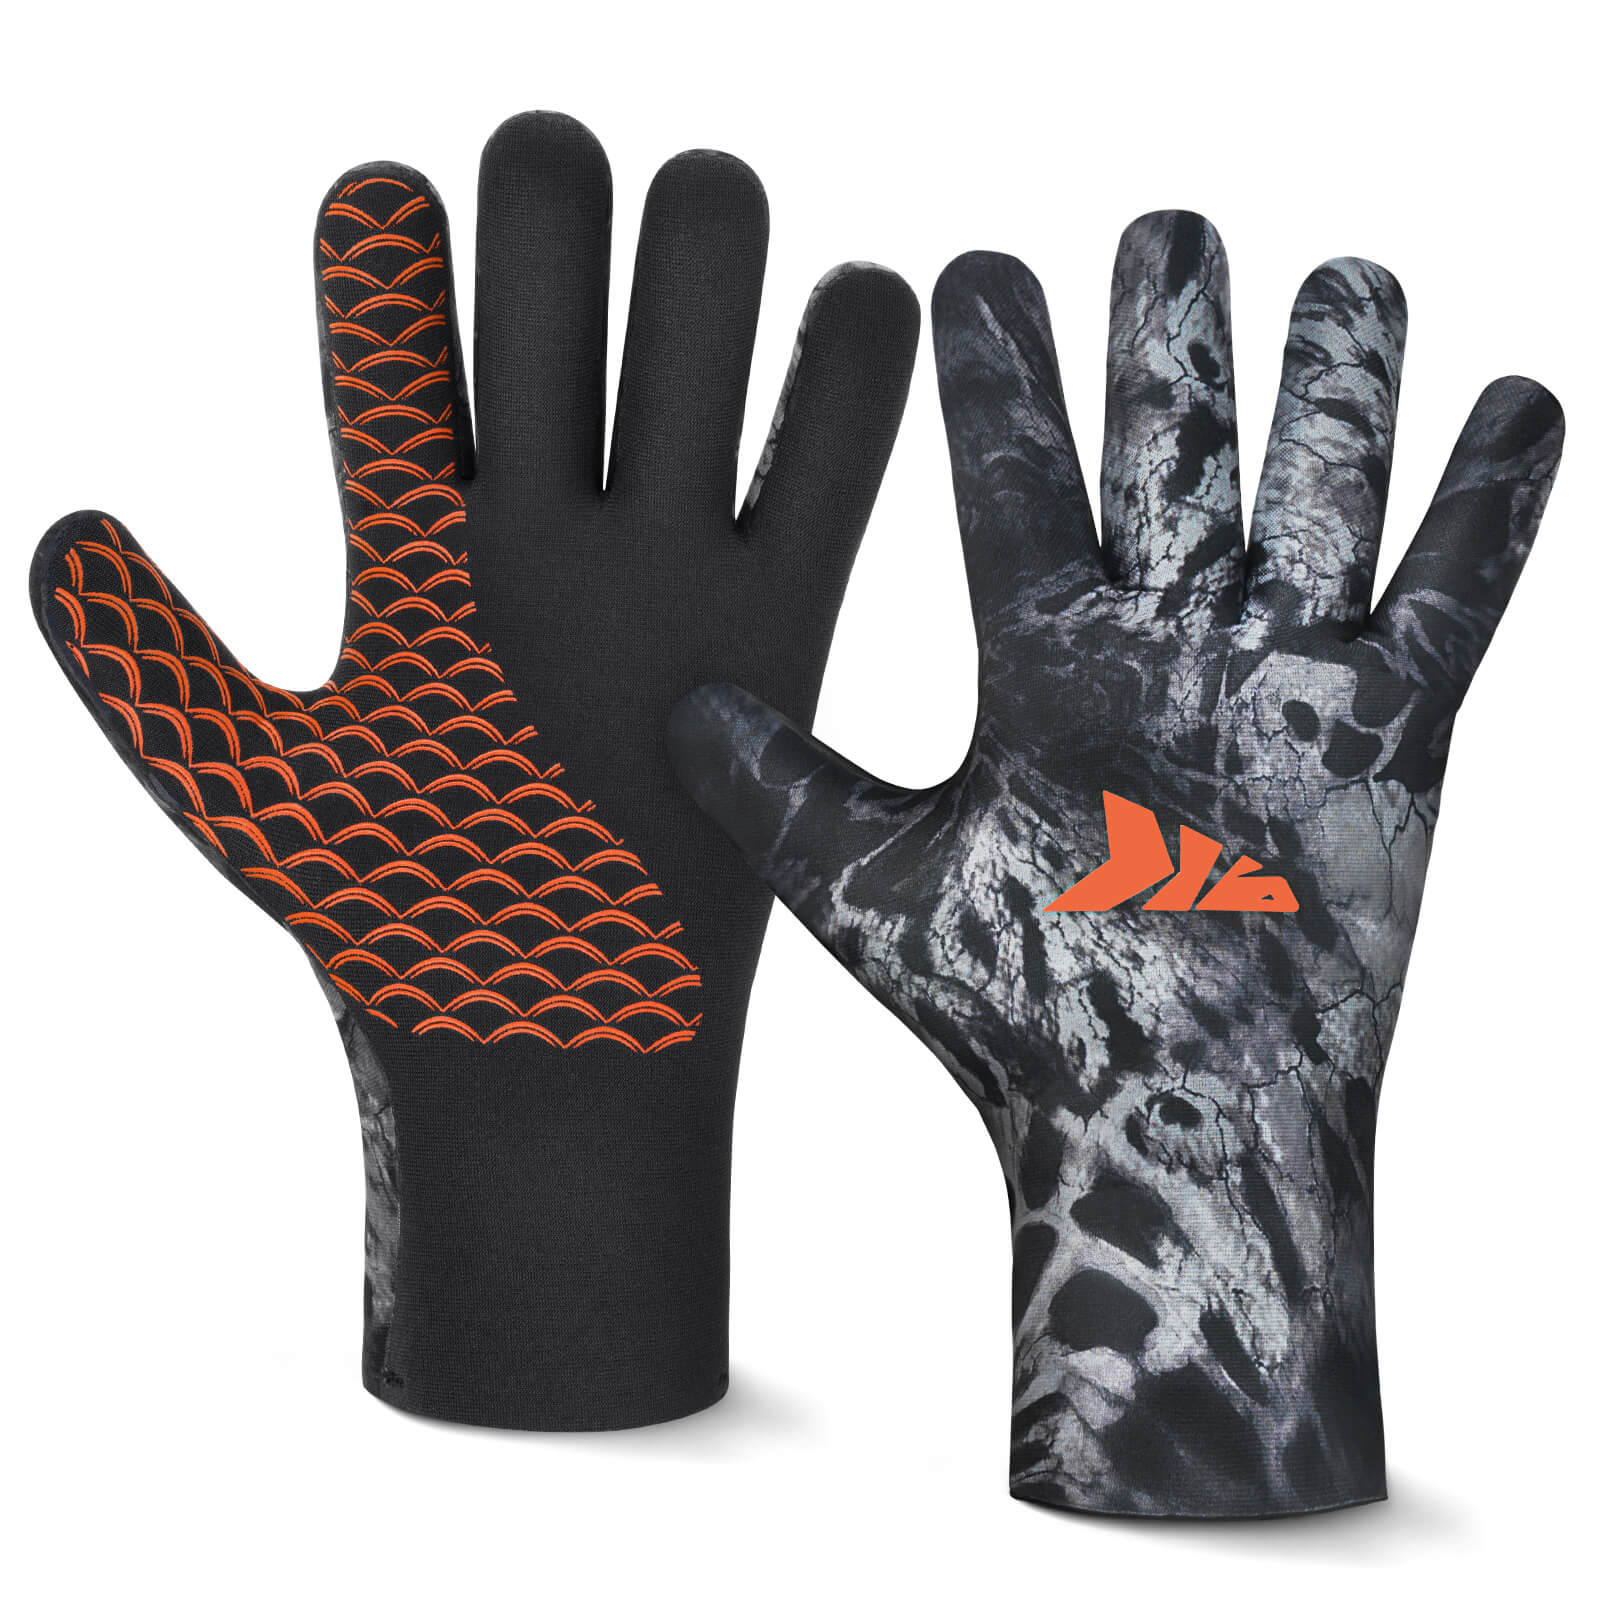 KastKing Mountain Morph 2 Fingerless Gloves